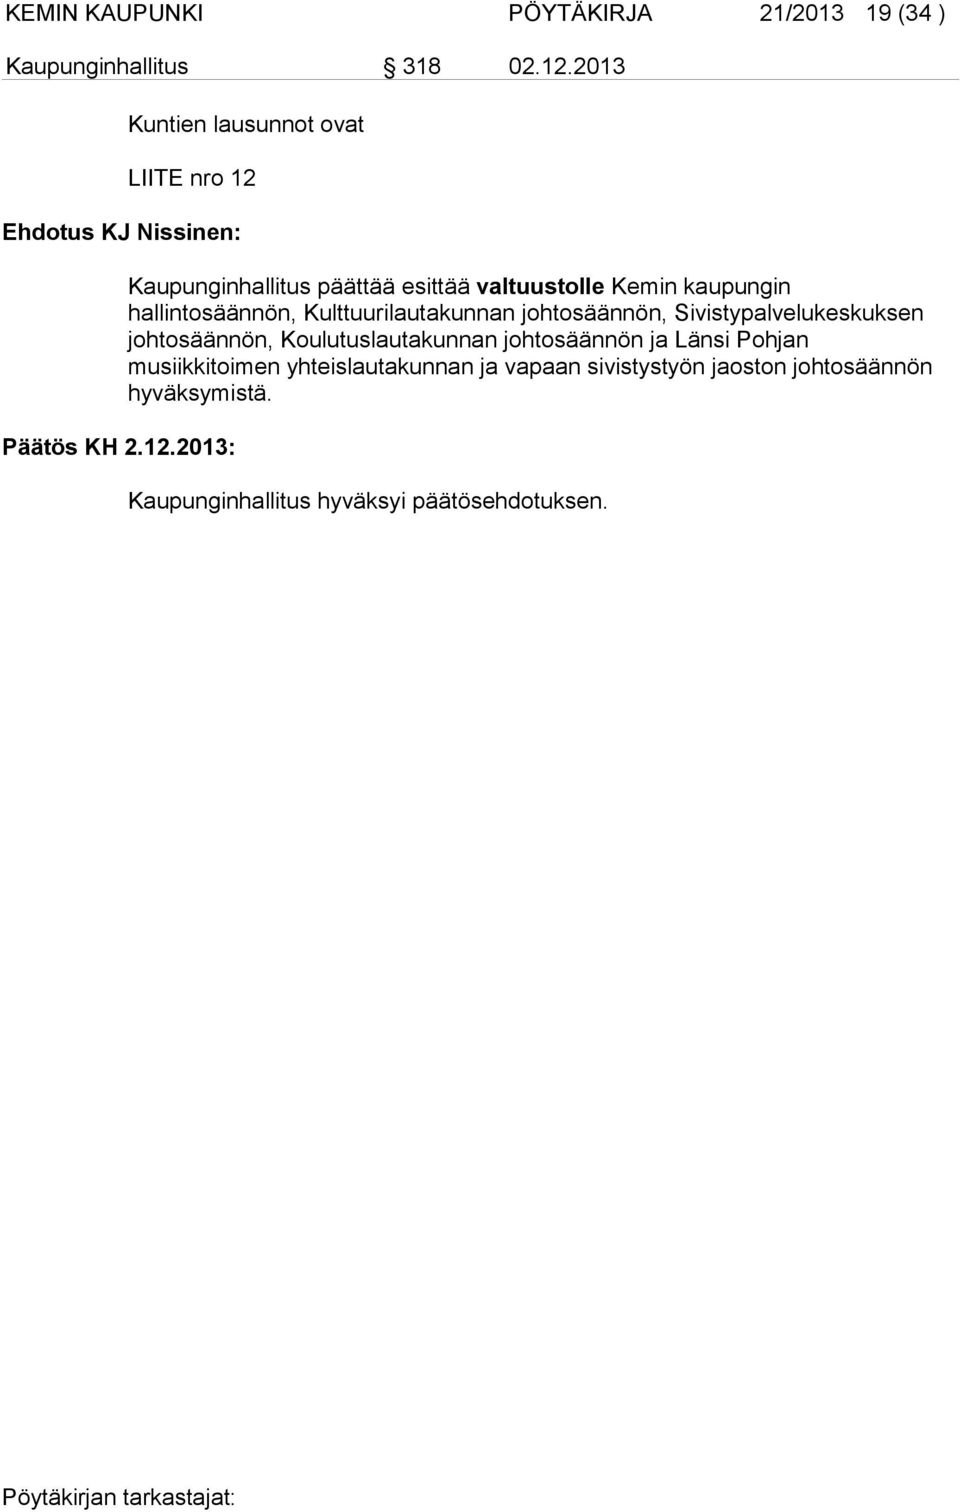 Ehdotus KJ Nissinen: Päätös KH 2.12.